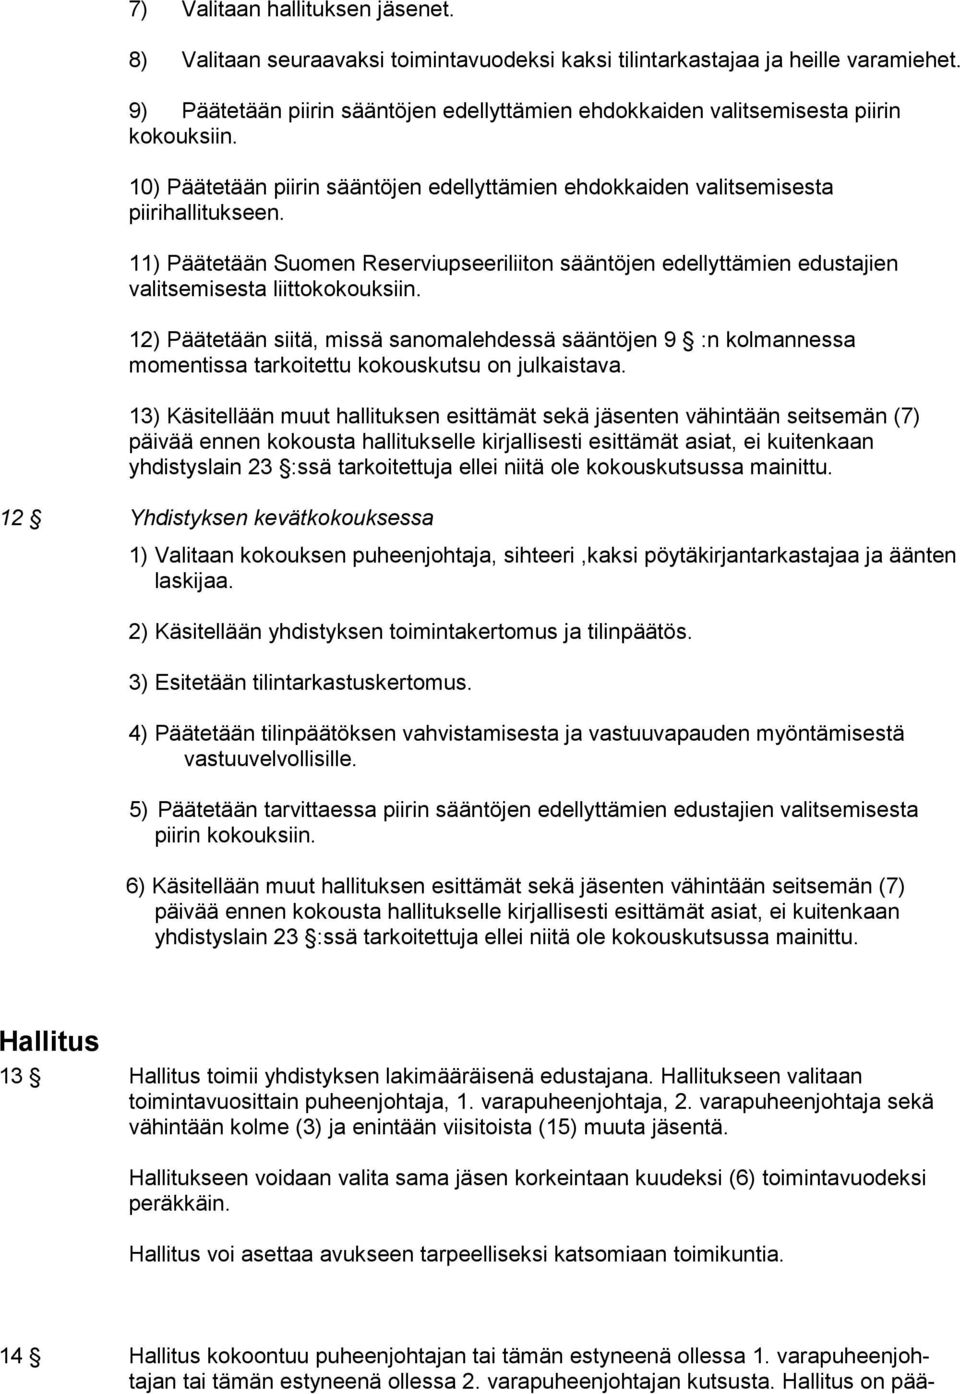 11) Päätetään Suomen Reserviupseeriliiton sääntöjen edellyttämien edustajien valitsemisesta liittokokouksiin.